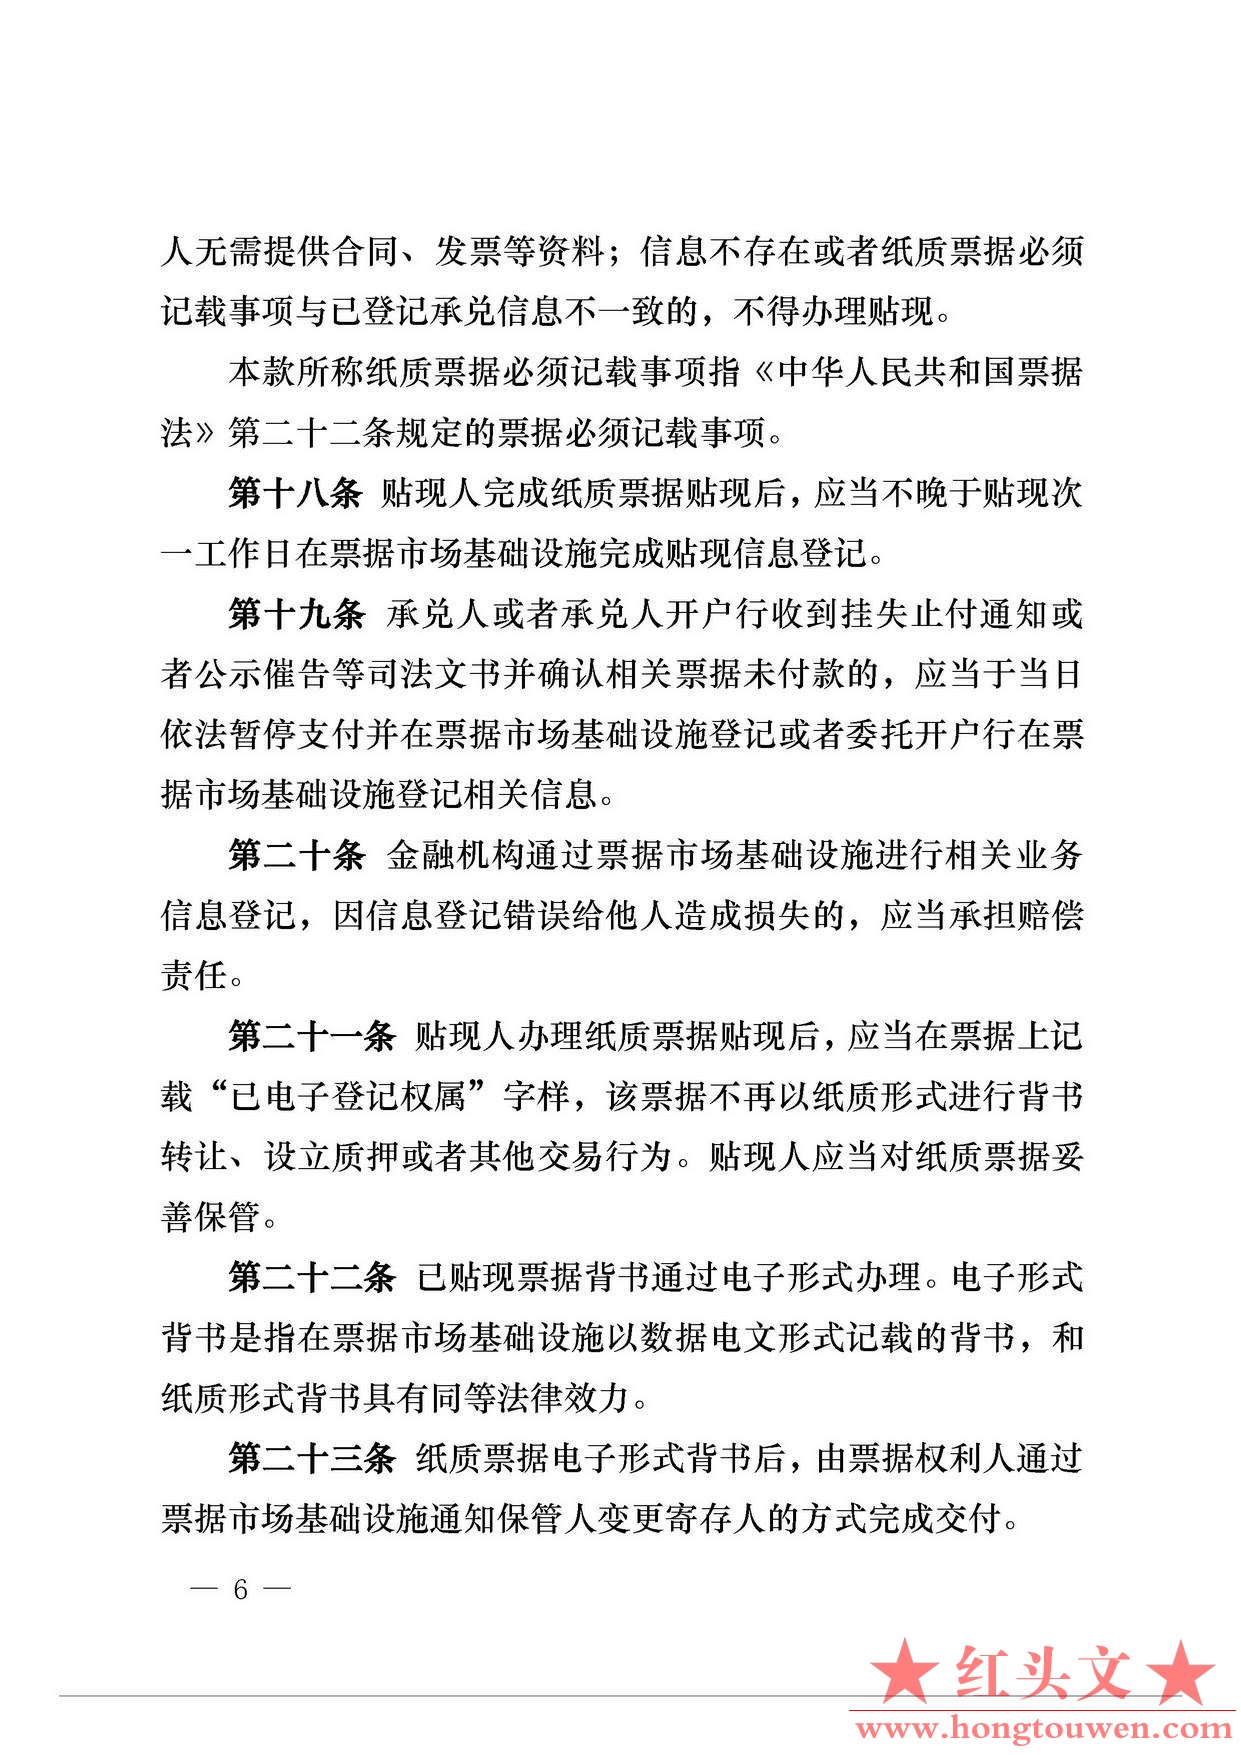 中国人民银行公告[2016]29号-票据交易管理办法_页面_06.jpg